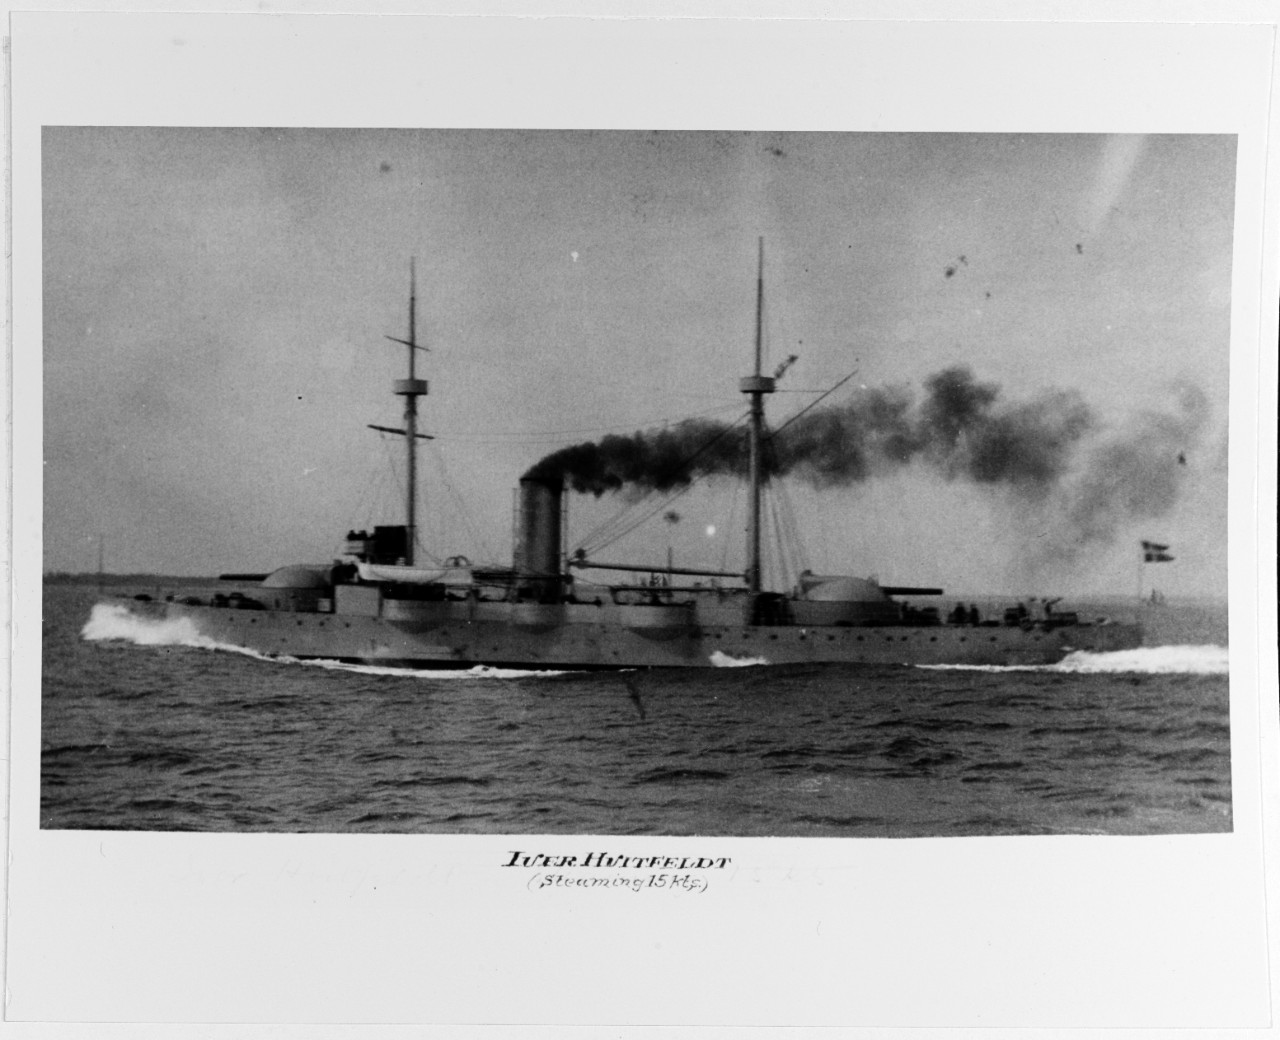 IVER HVITFELDT (Danish Coast Defense Battleship, 1886)